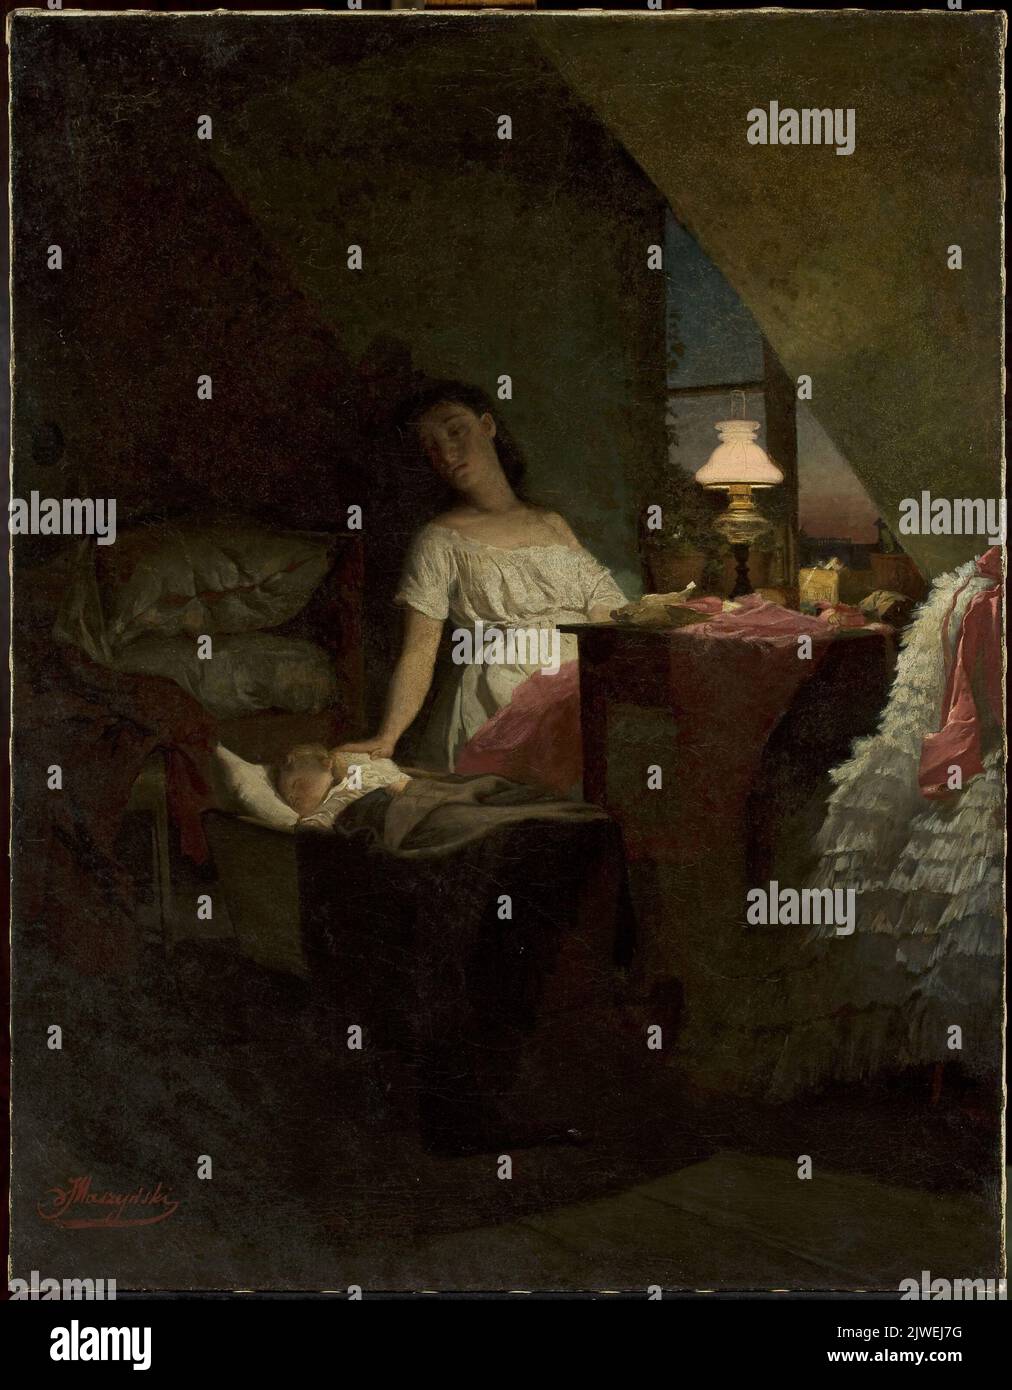 Escena del género – Premonición de la noche. Maszyński, Julián (1847-1901), pintor Foto de stock